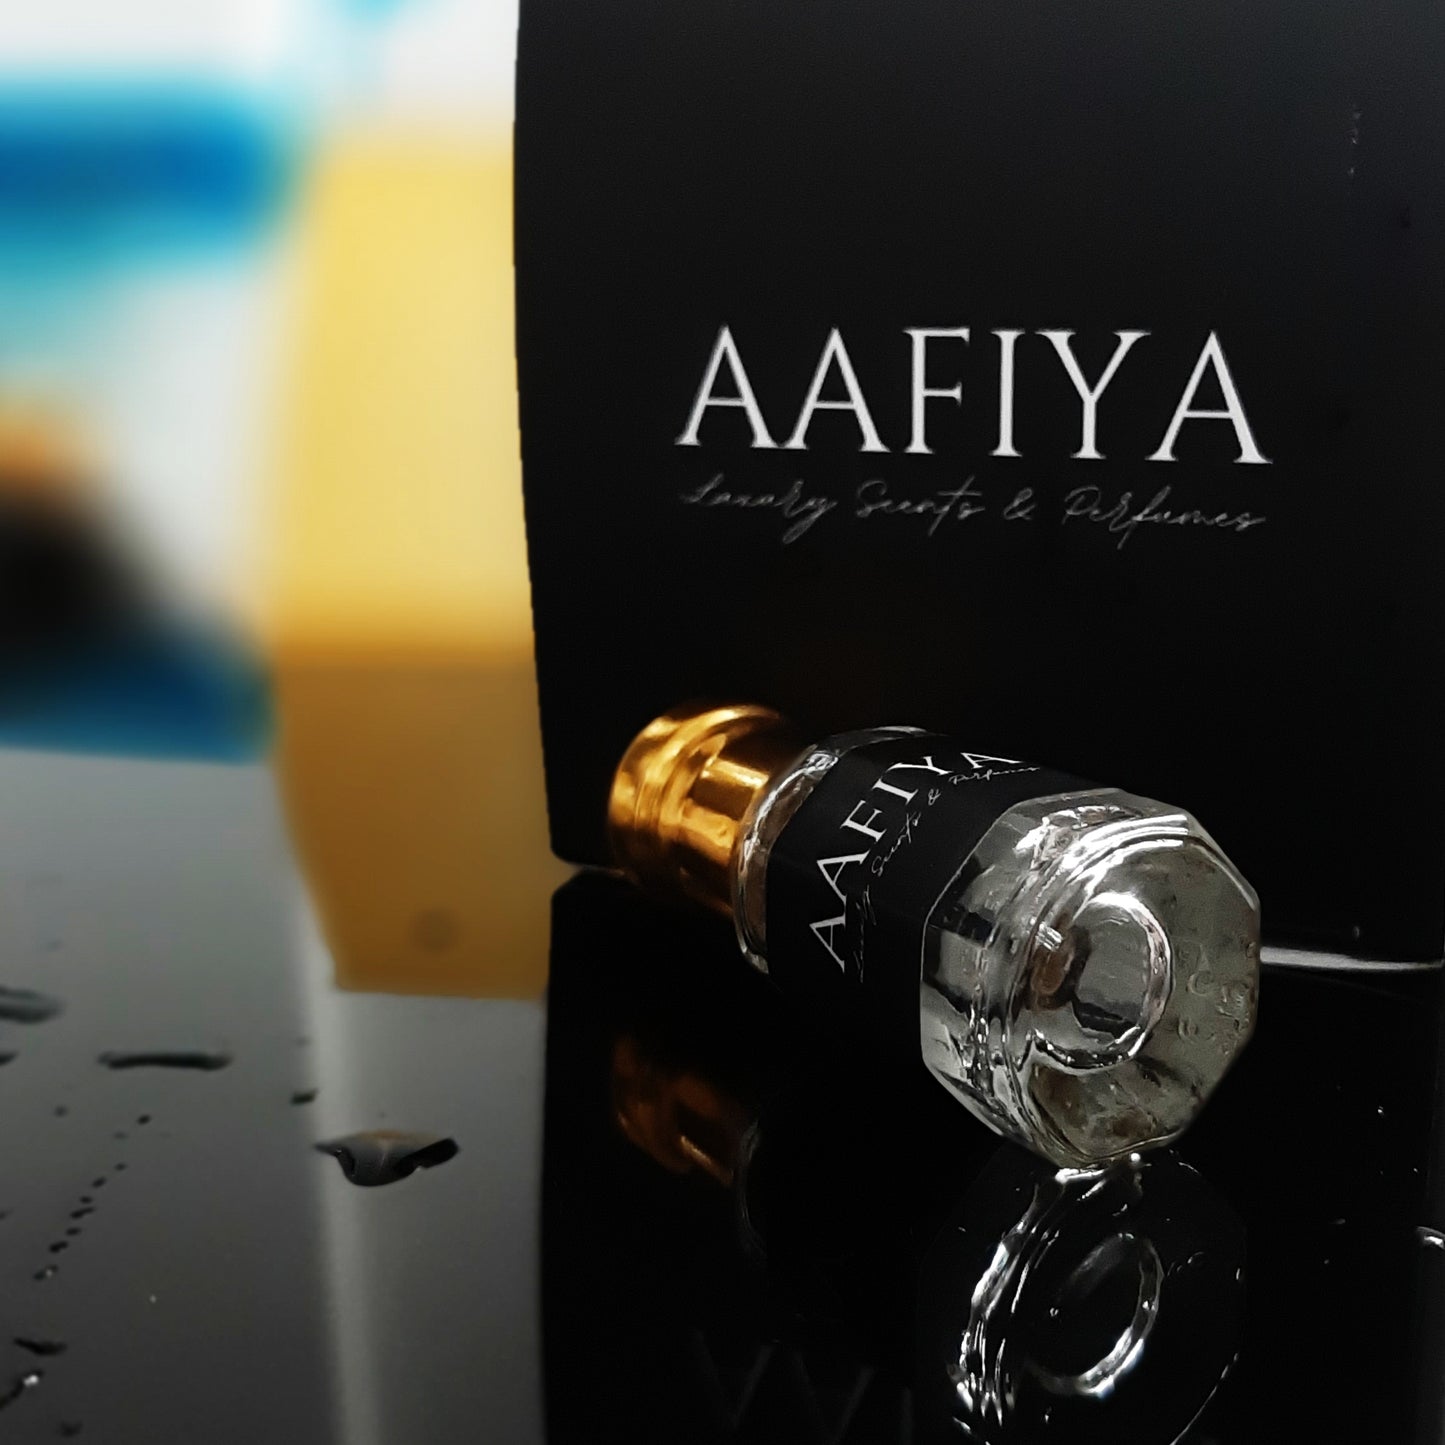 Eros Flame - Aafiya Luxury Scents & Perfumes